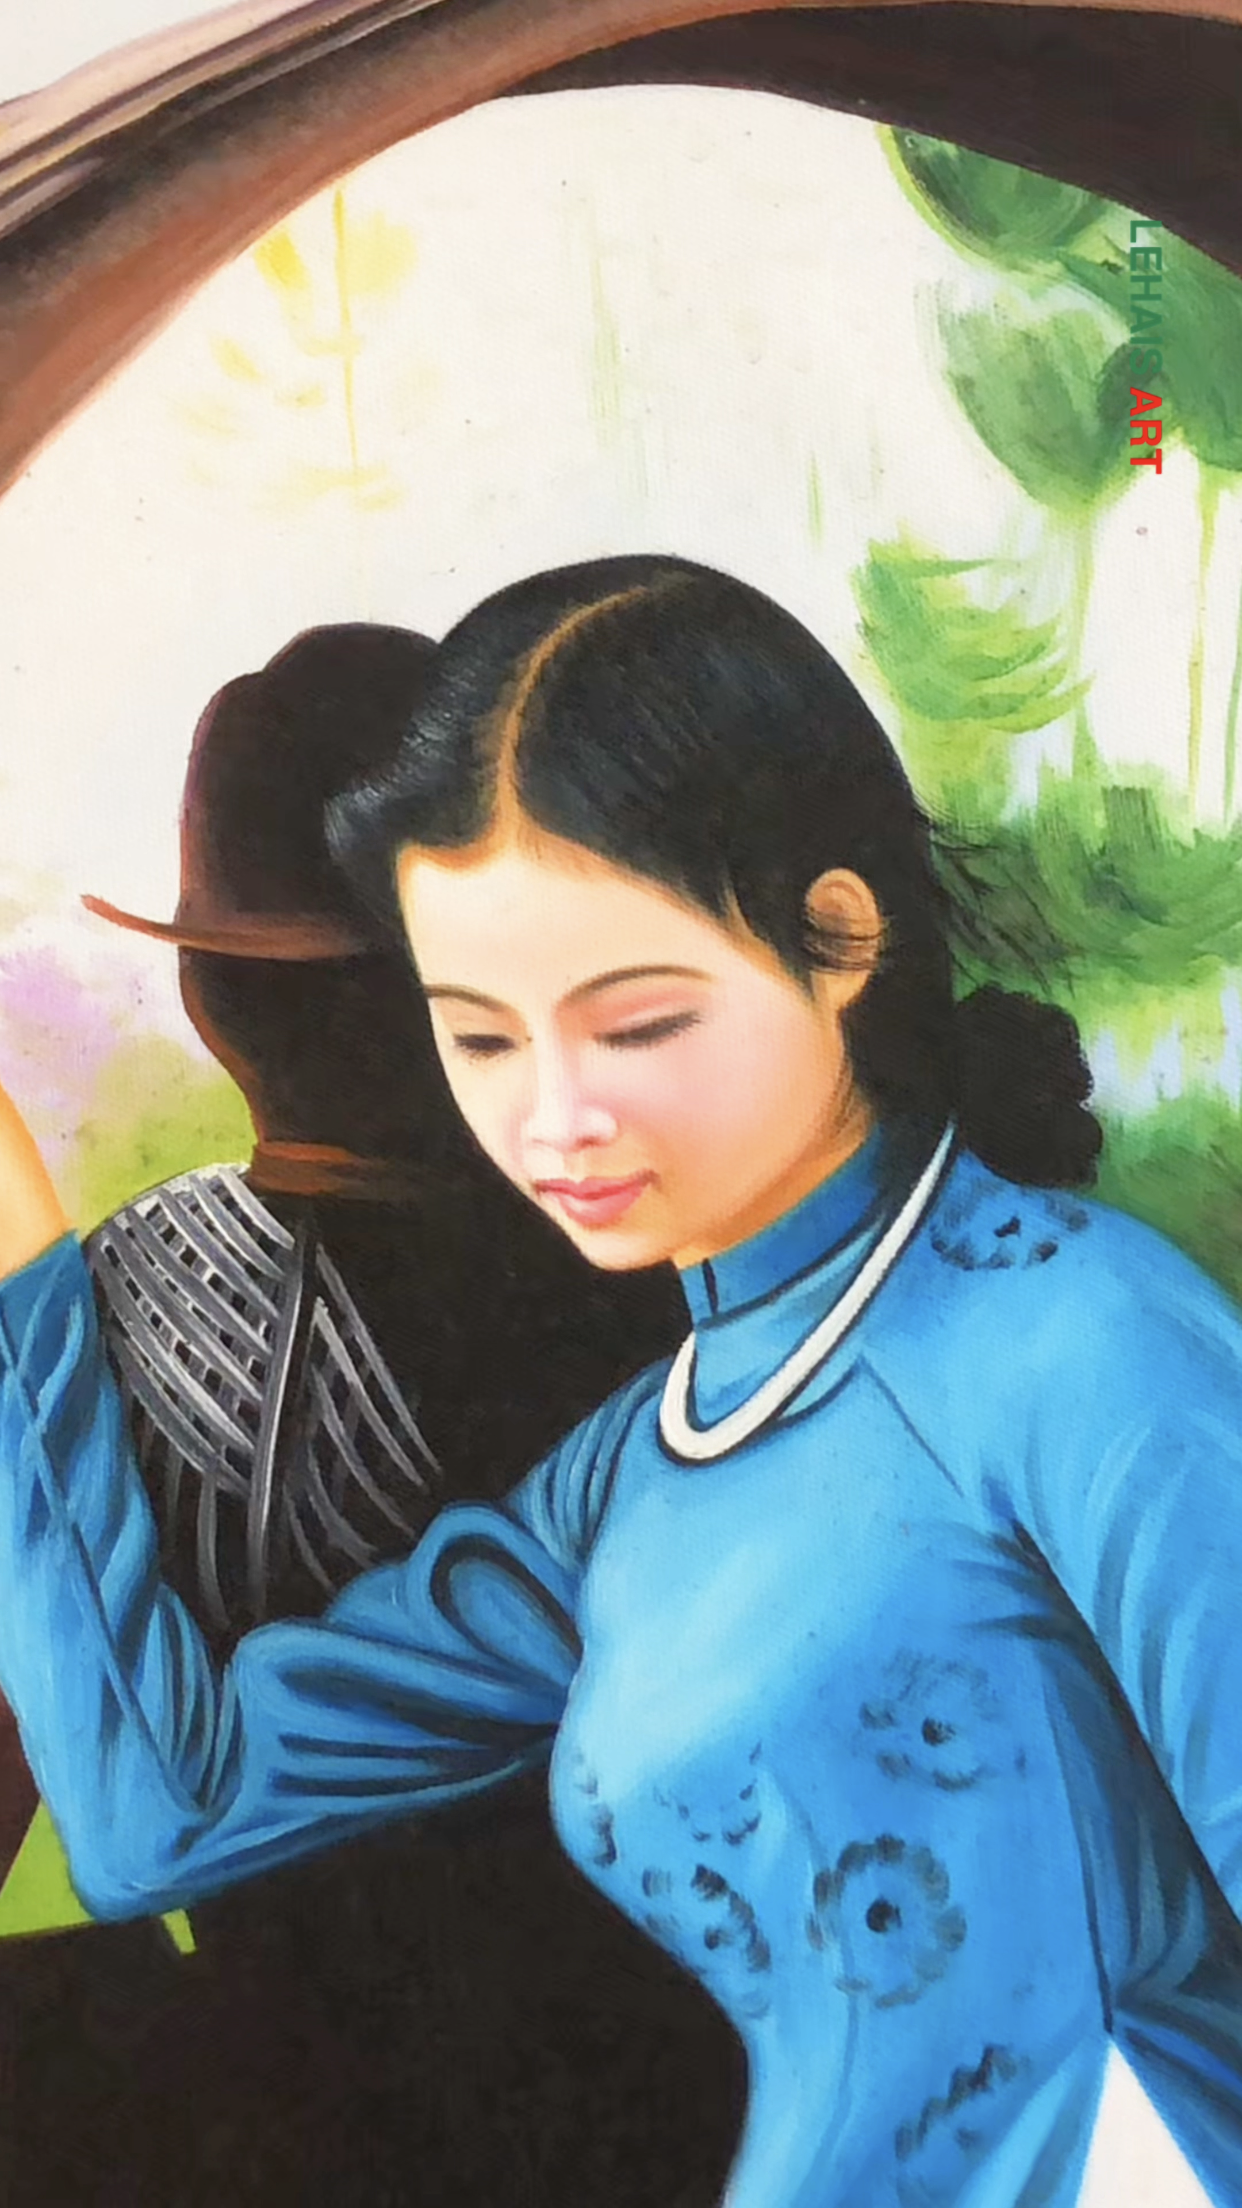 Nét đẹp duyên dáng của thiếu nữ trong tà áo dài trong bức tranh sơn dầu